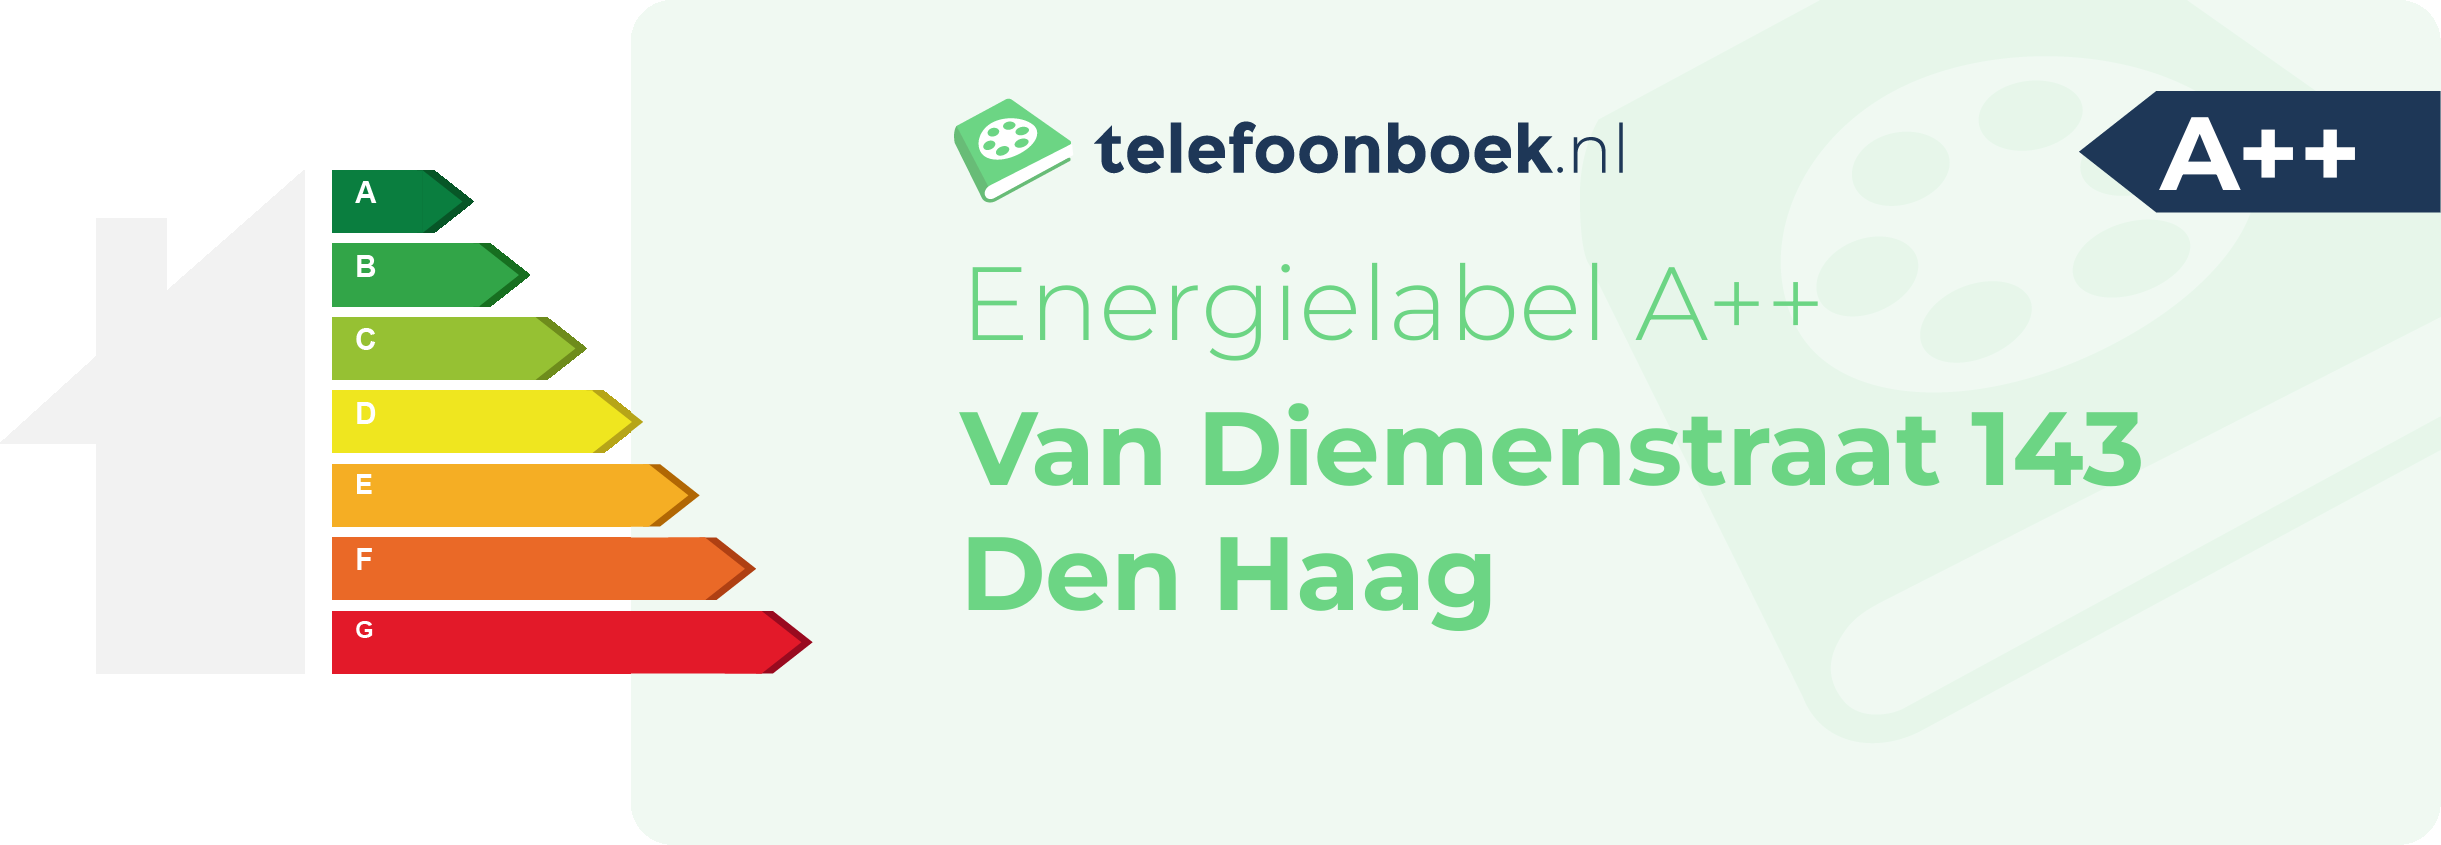 Energielabel Van Diemenstraat 143 Den Haag